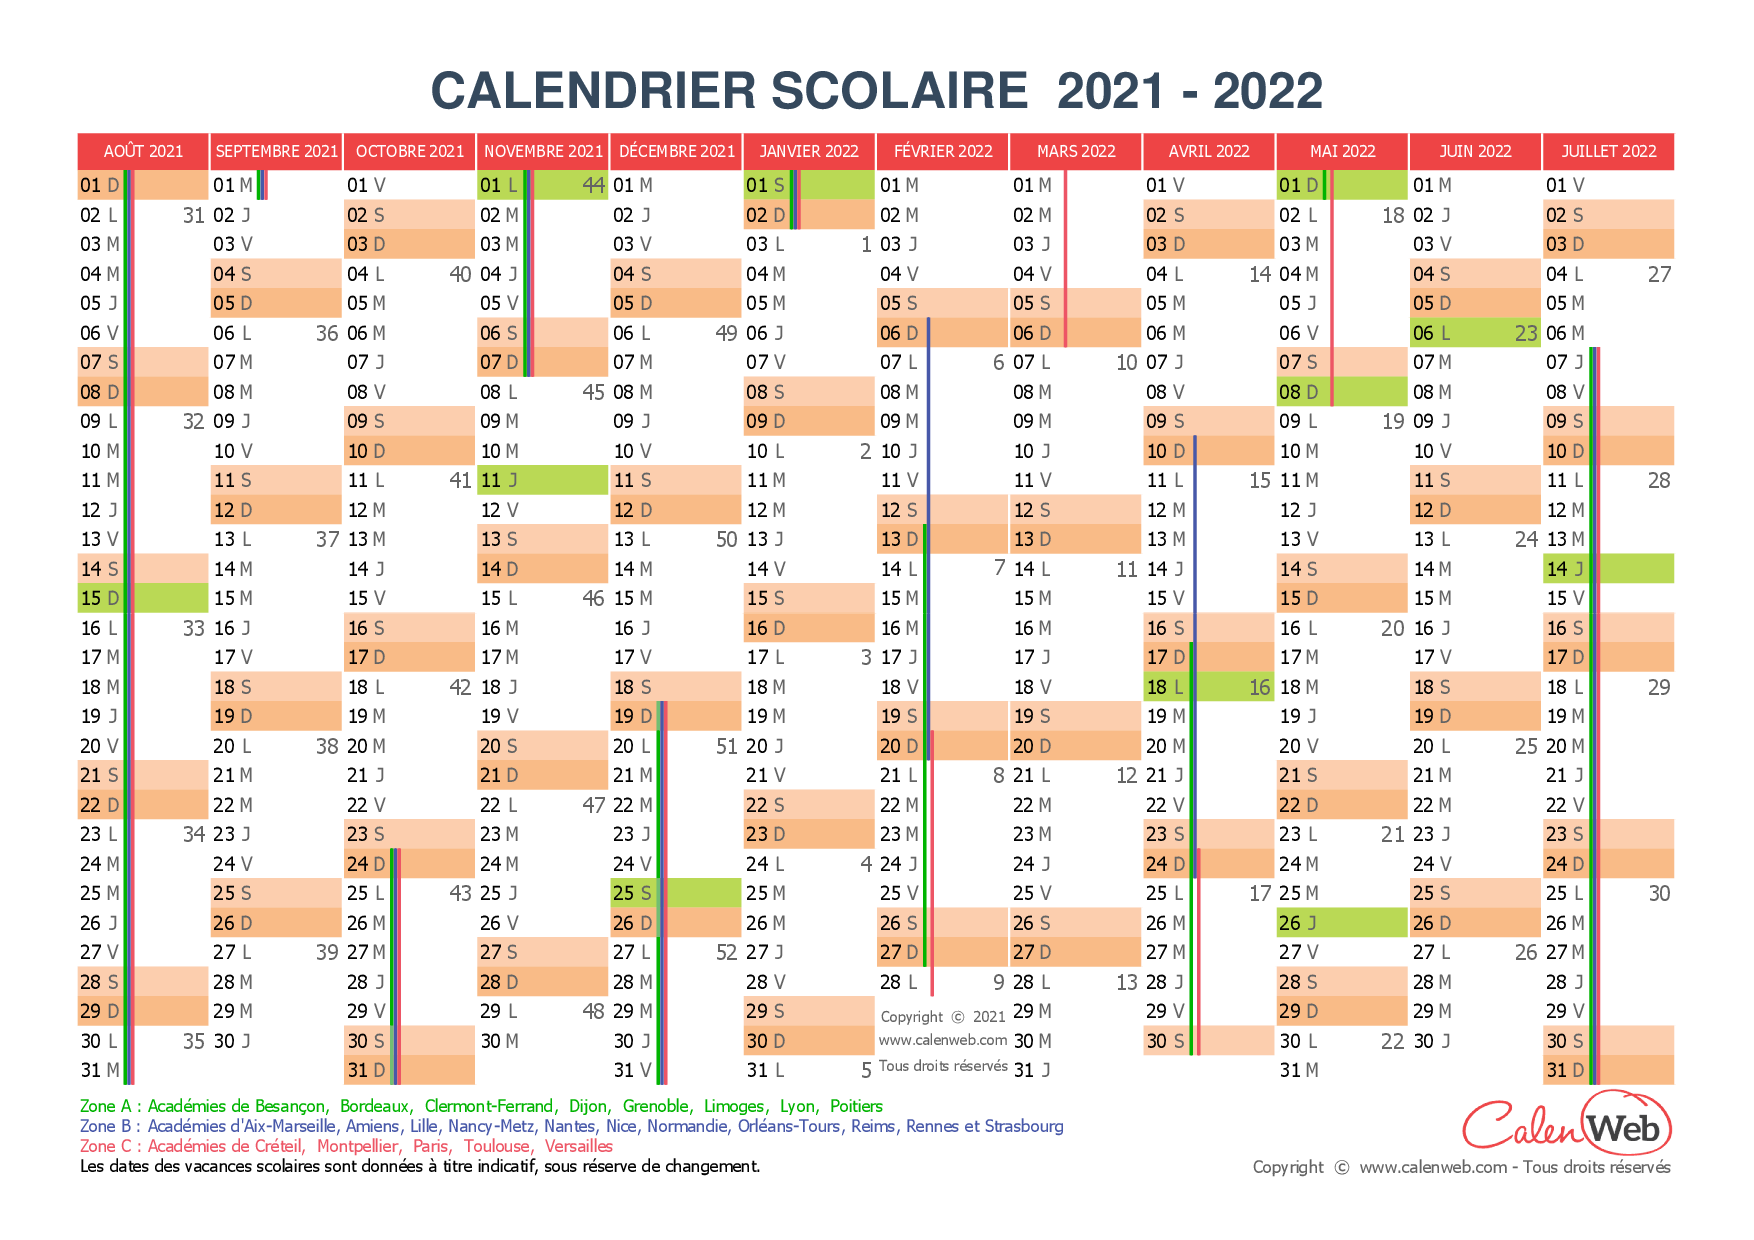 Calendrier 2022 Calenweb Calendrier scolaire annuel 2021 2022 avec affichage des jours 